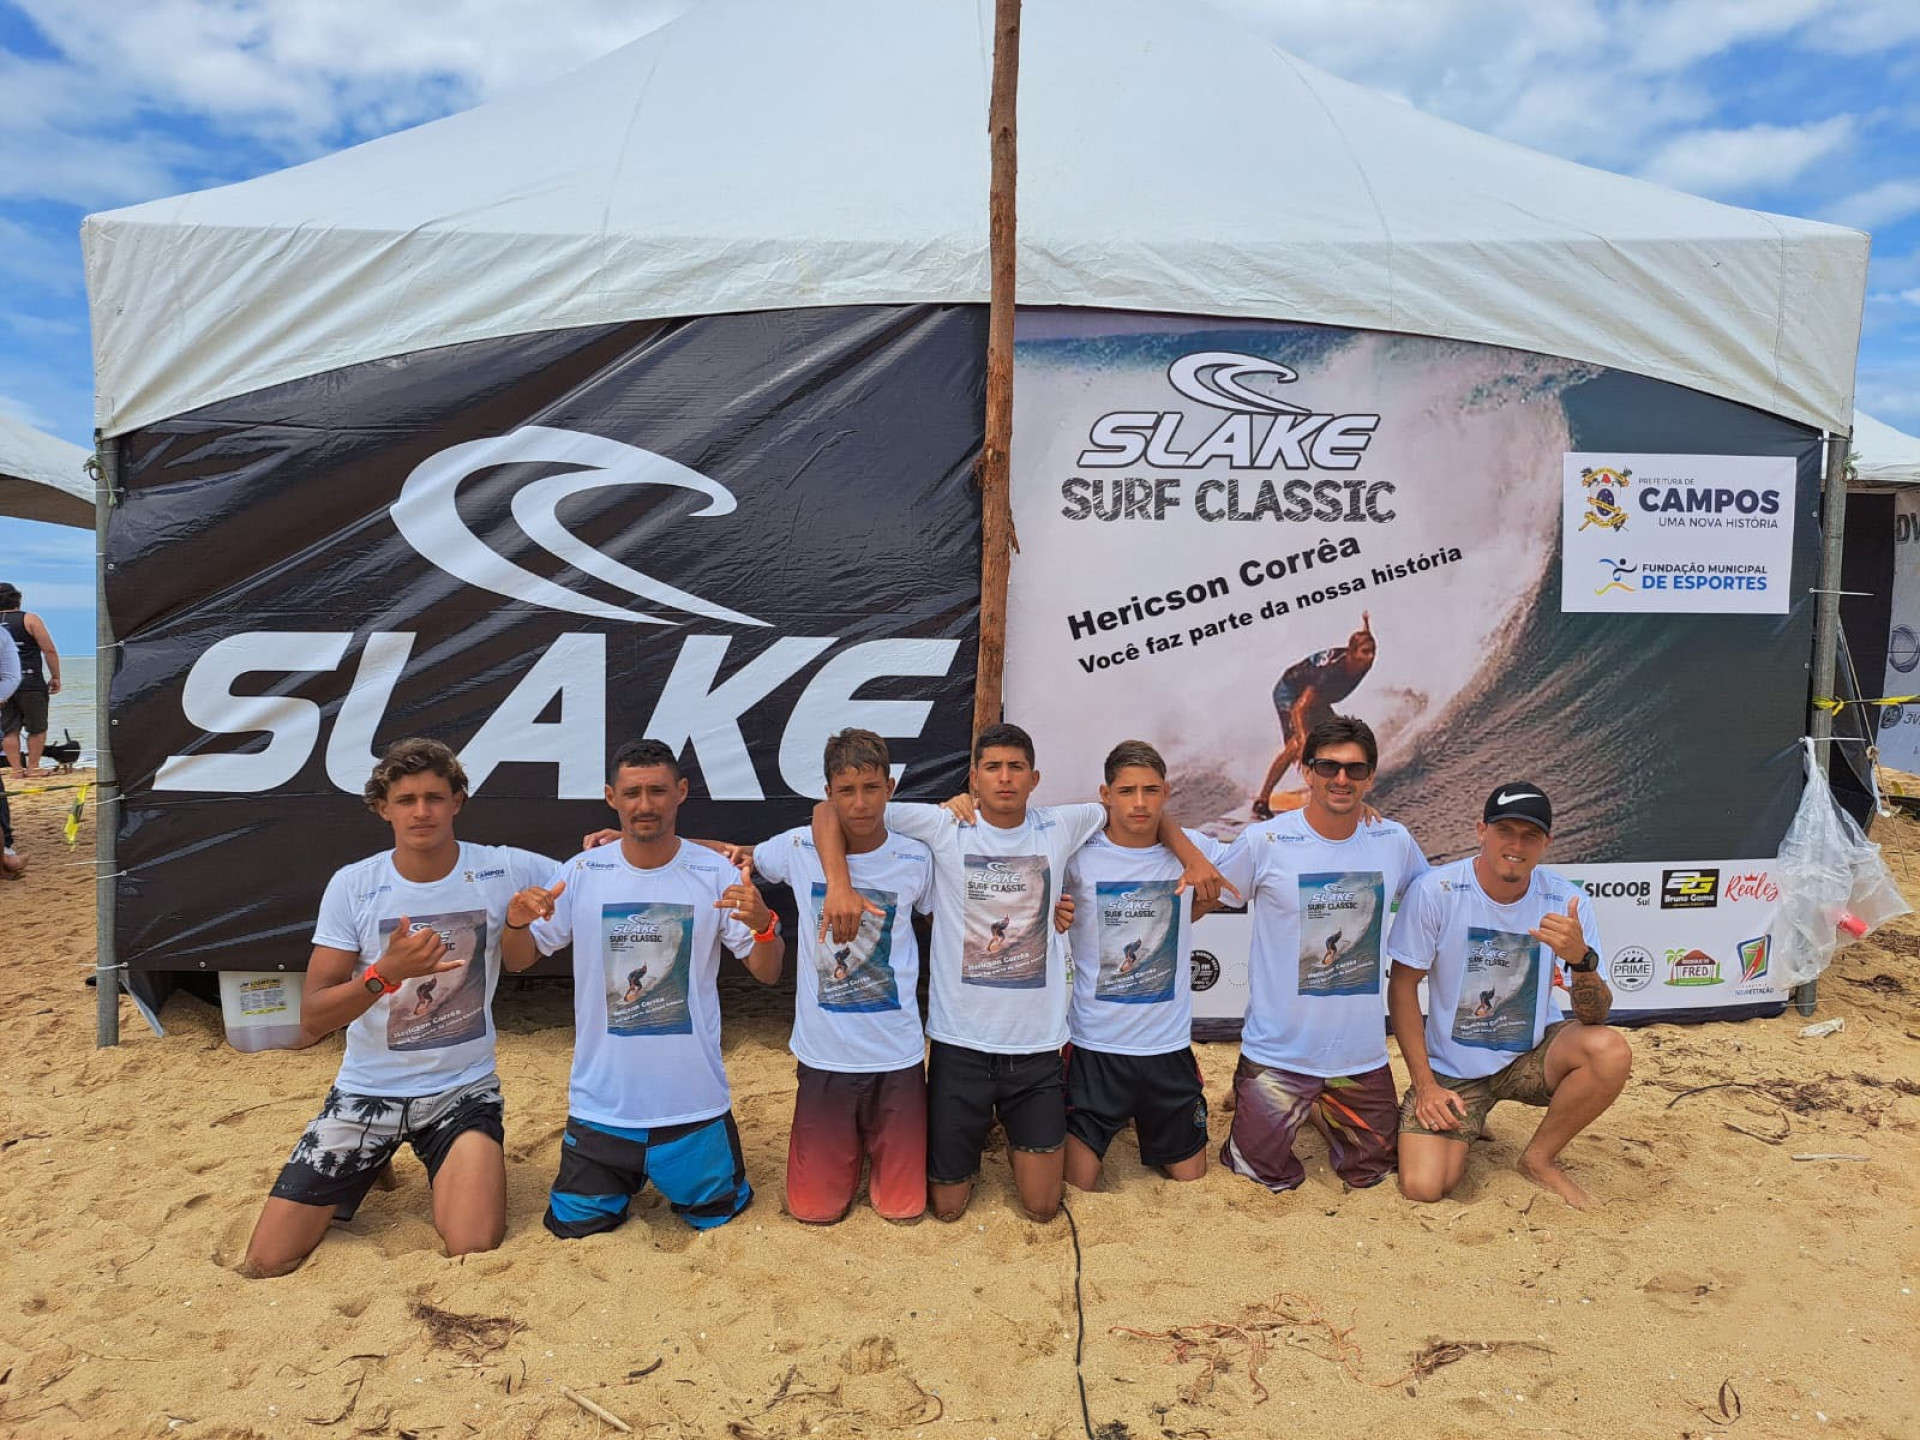 Participaram 150 atletas, com surfistas da região e de mais três estados: Espírito Santo, São Paulo e Ceará, entre 12 e 50 anos - Divulgação 